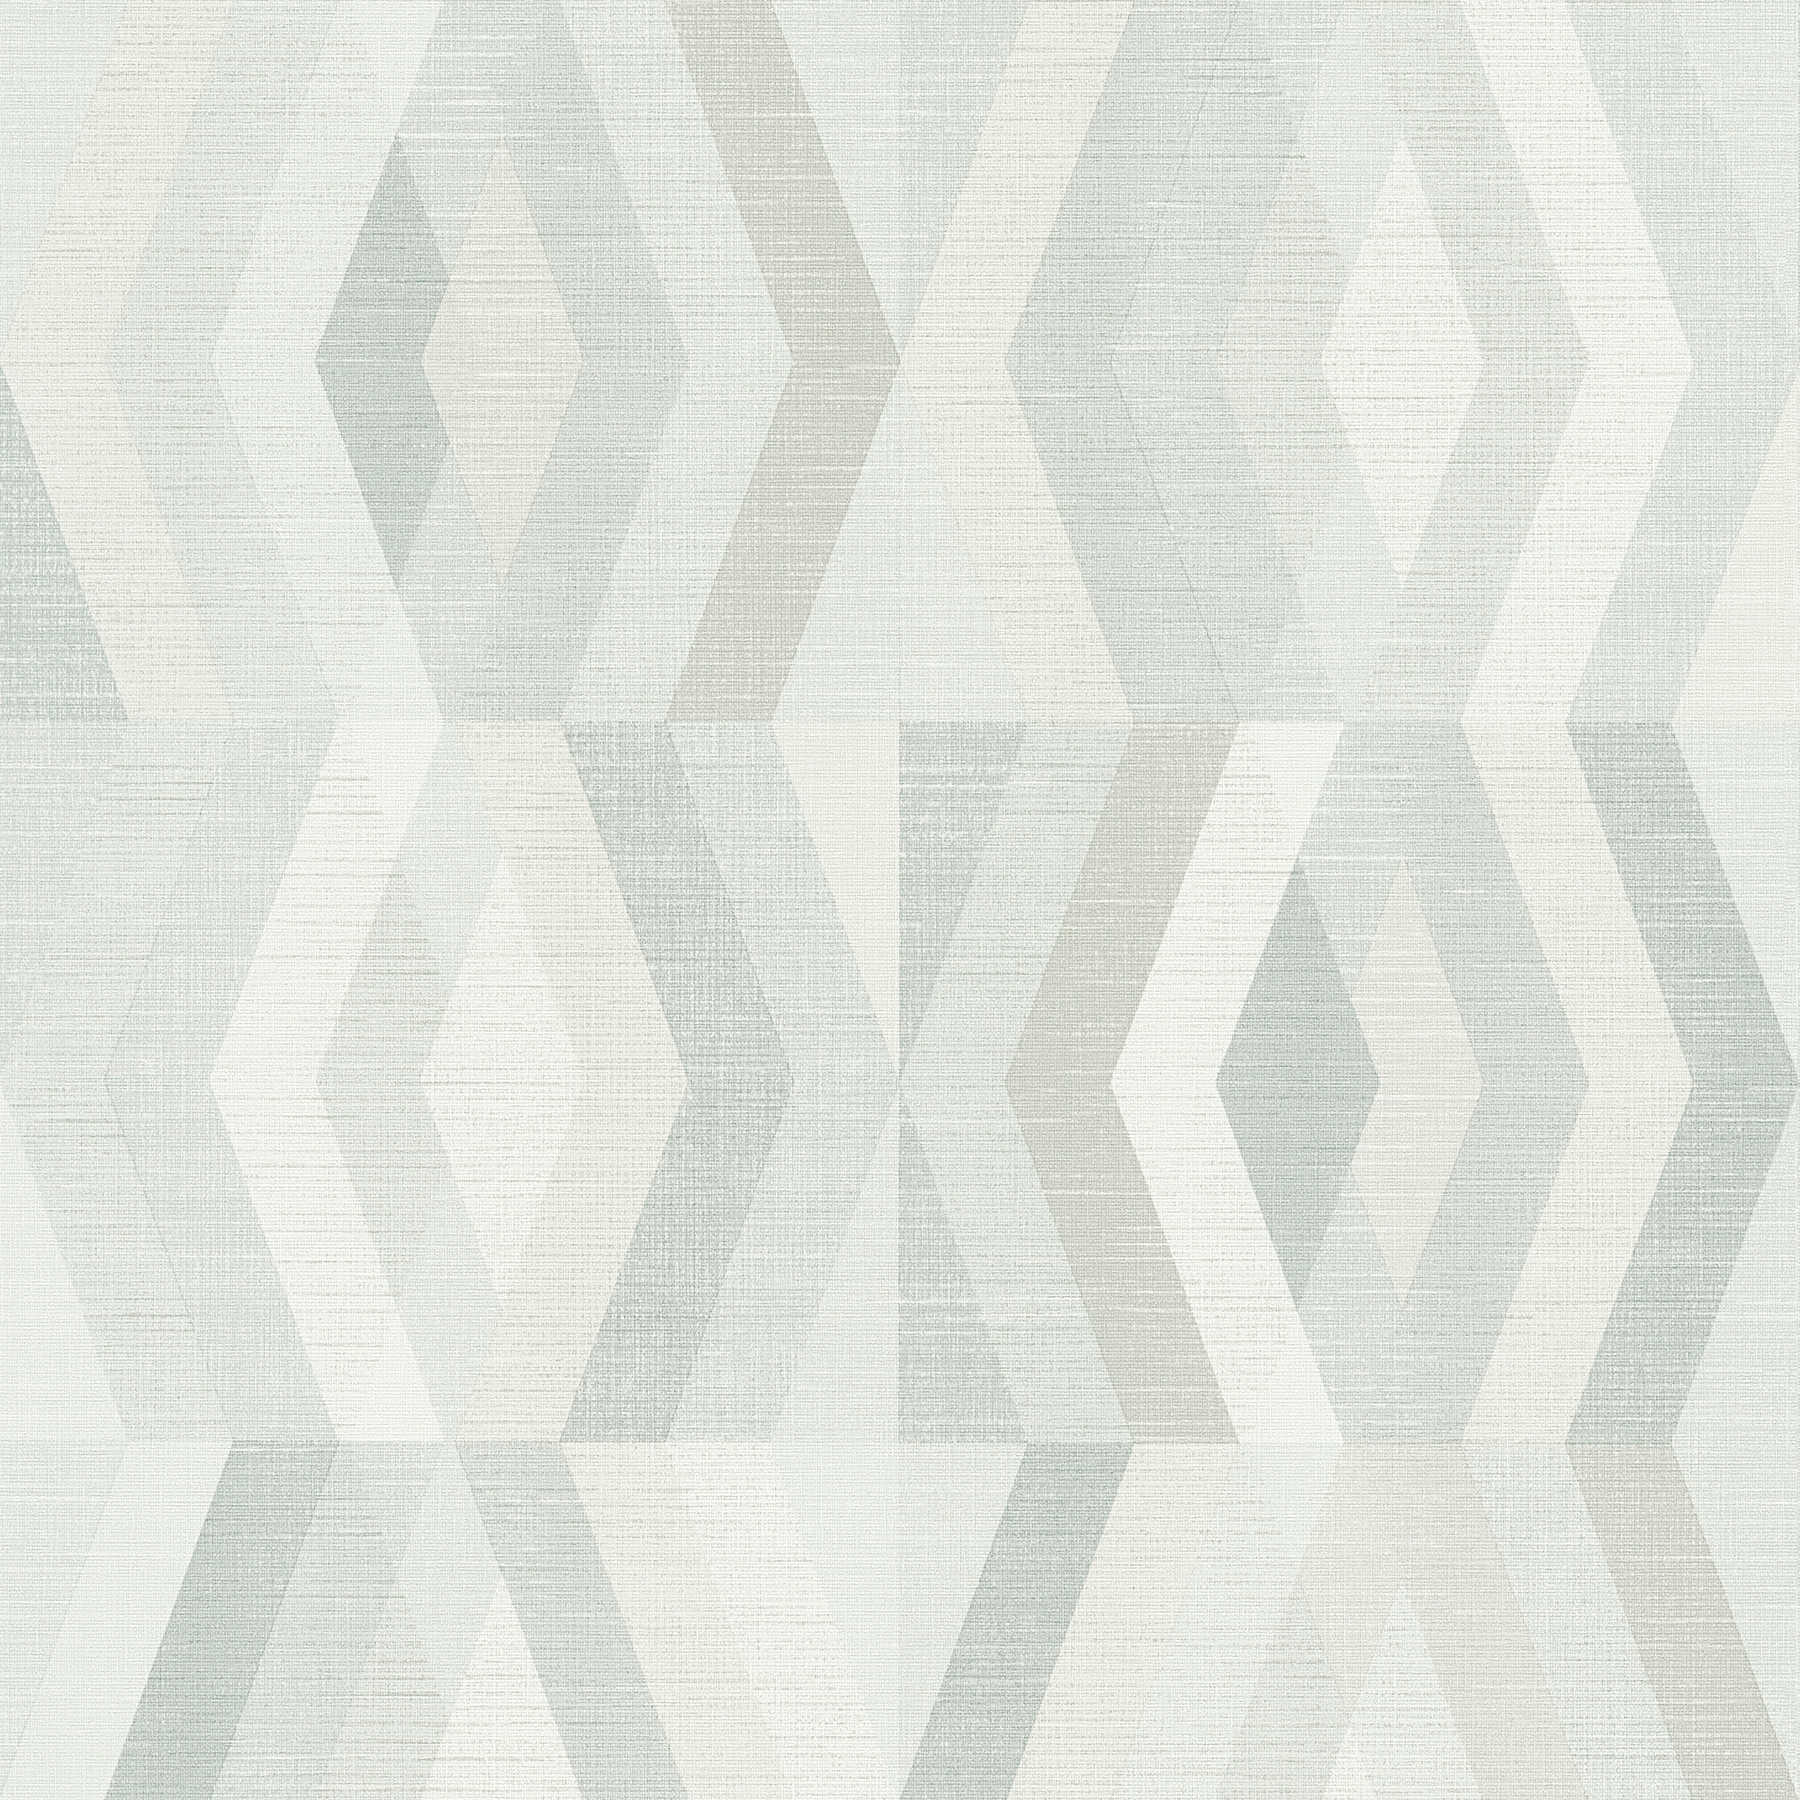 Papier peint style scandinave à motifs géométriques - gris, beige
